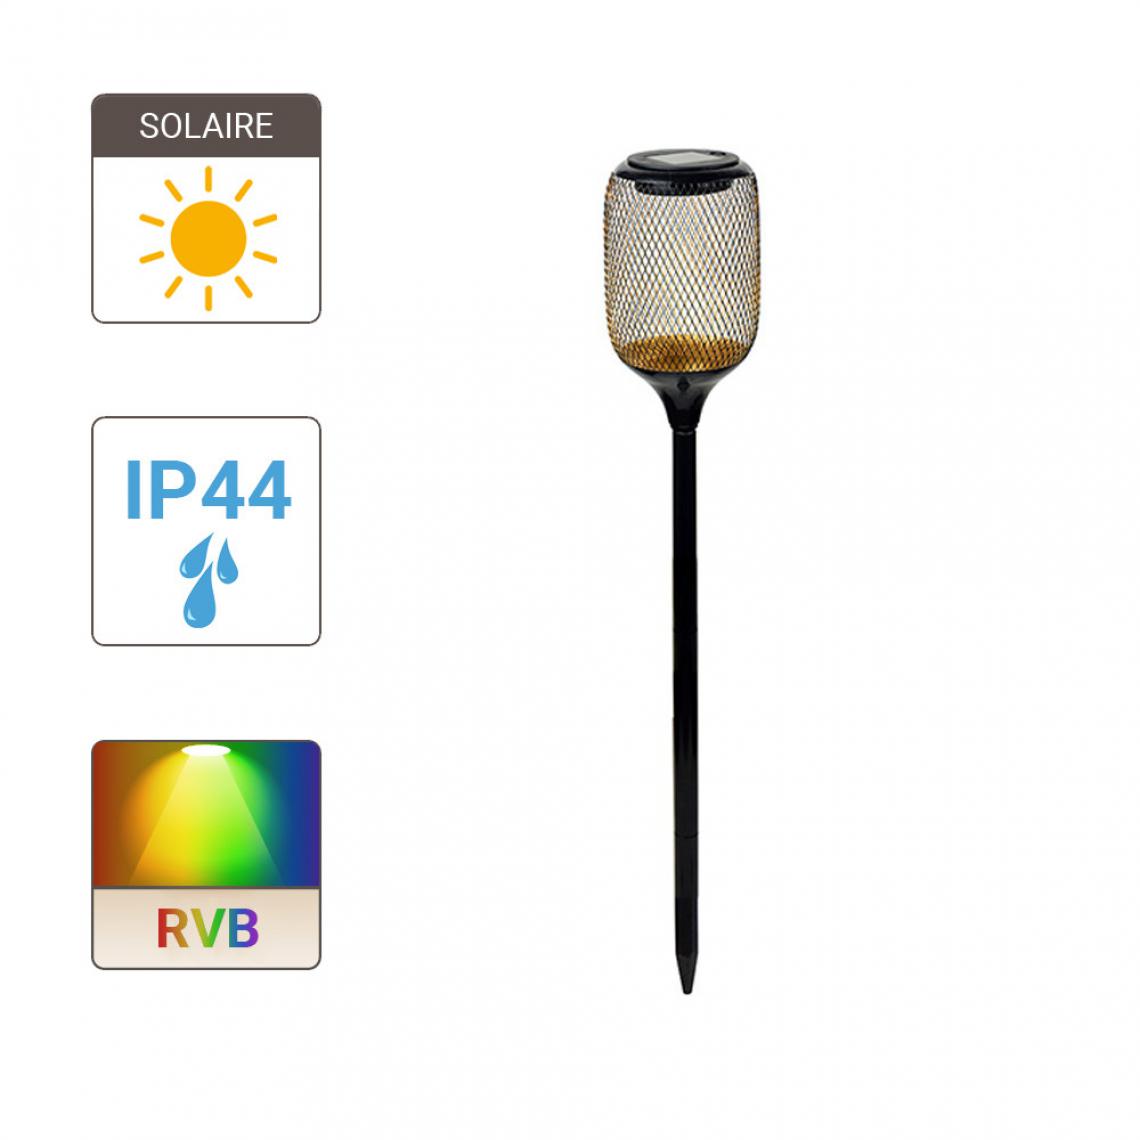 Xanlite - Balise à piquet Solaire 2 LED RVB + Blanc IP44 8h d'autonomie - Eclairage solaire